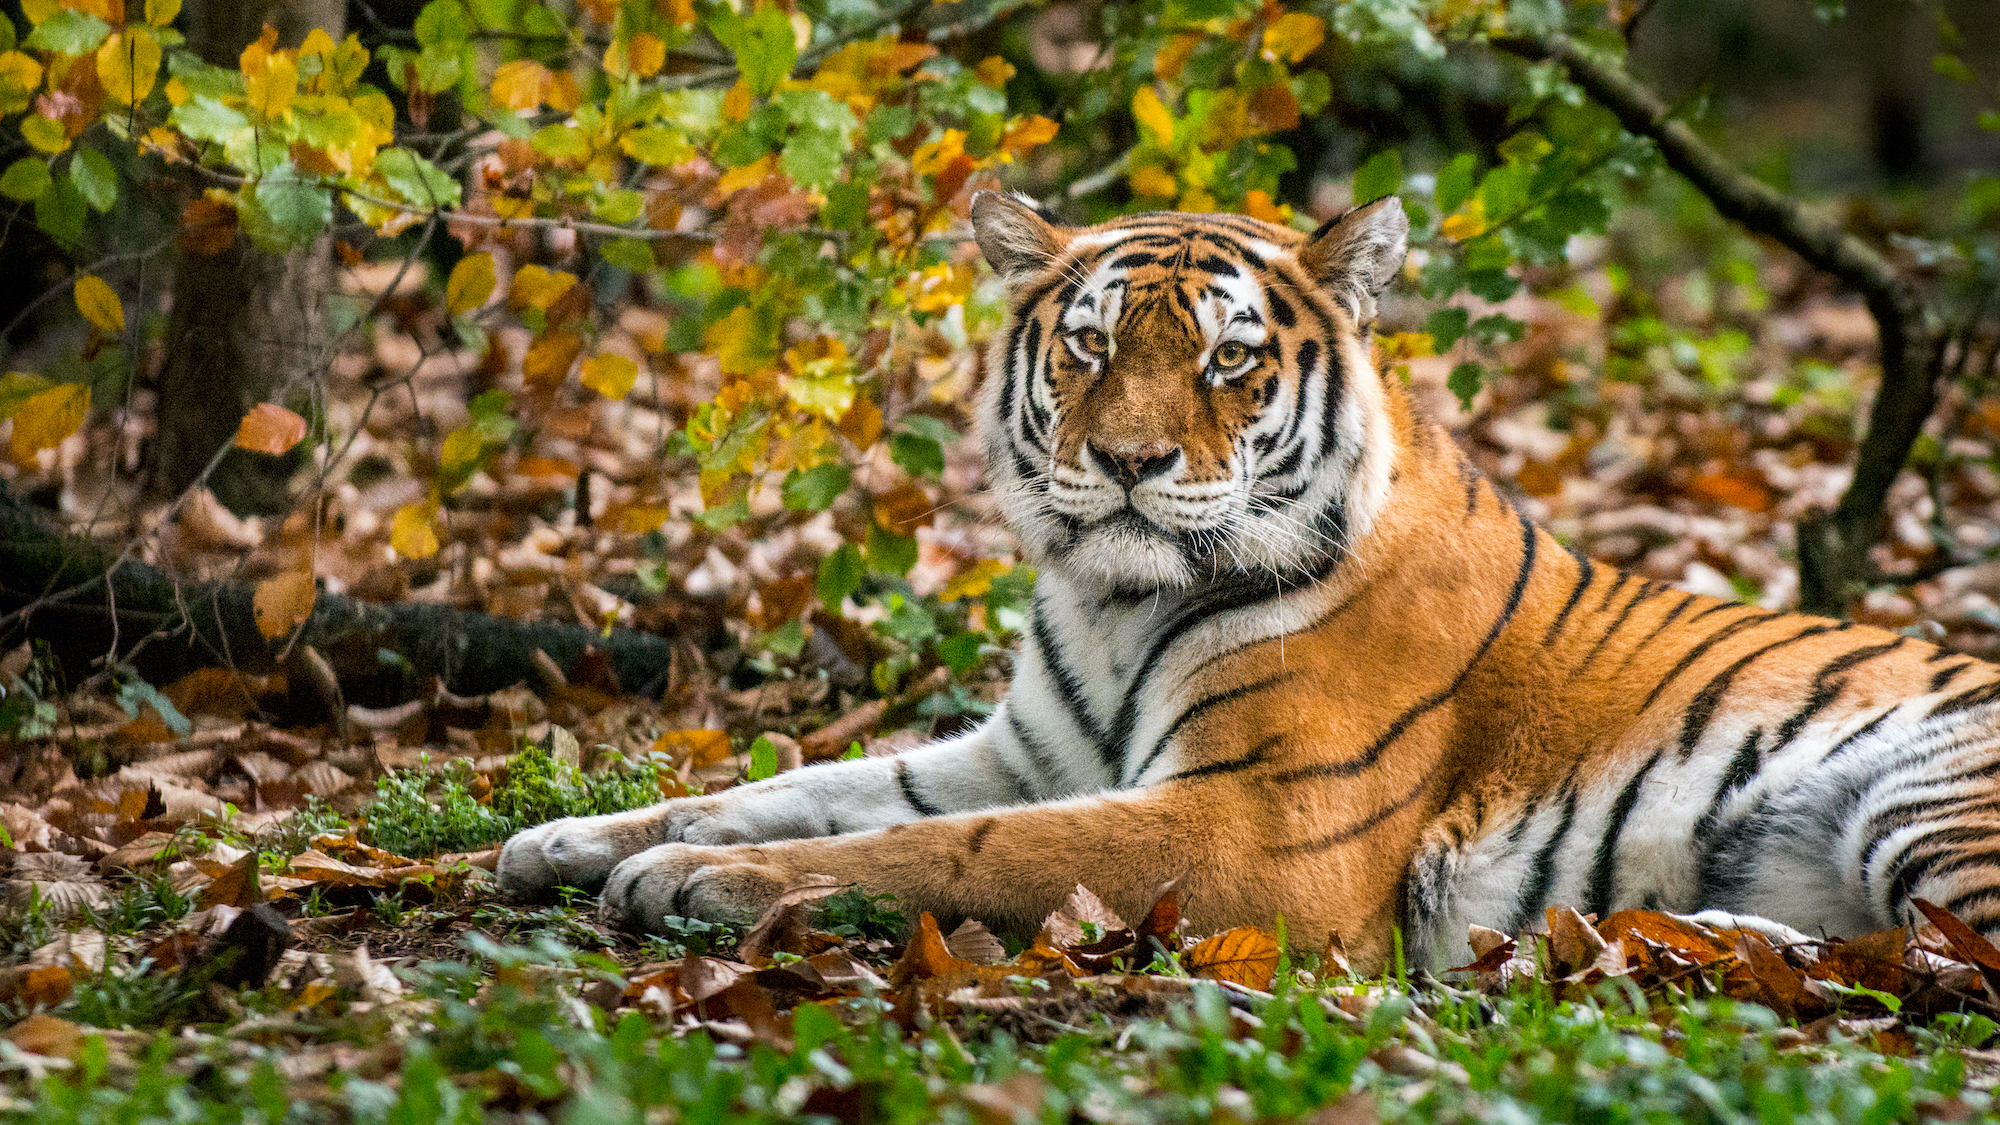 Billes - Tigre du Bengal 24 + 1